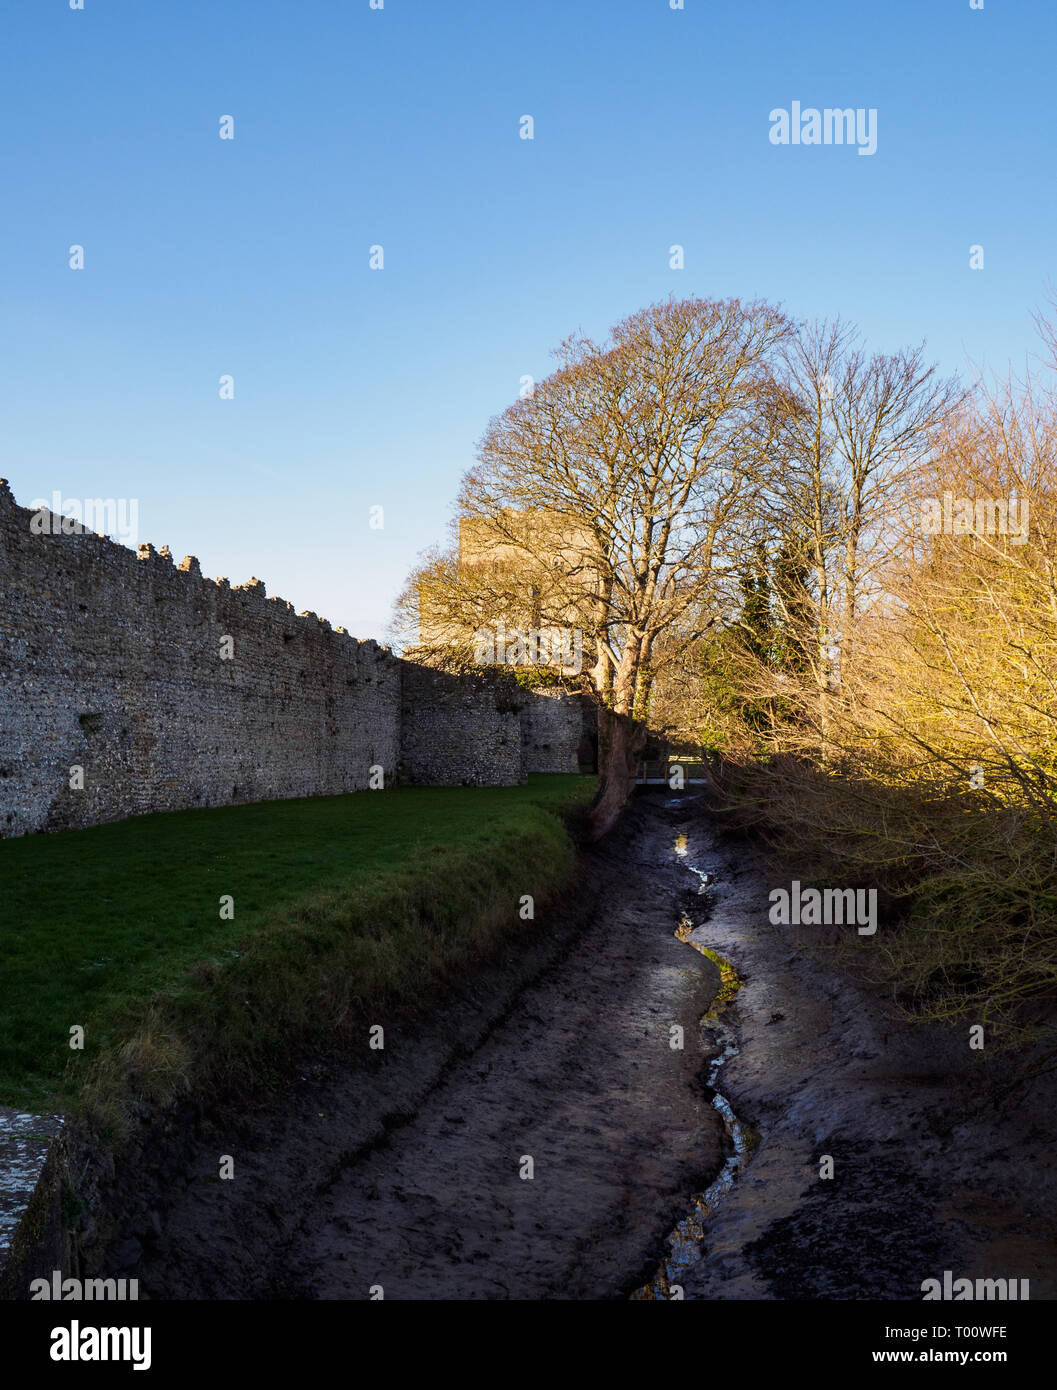 Photographie de les murs et la tour du château de Porchester, Portsmouth, Hampshire. Banque D'Images